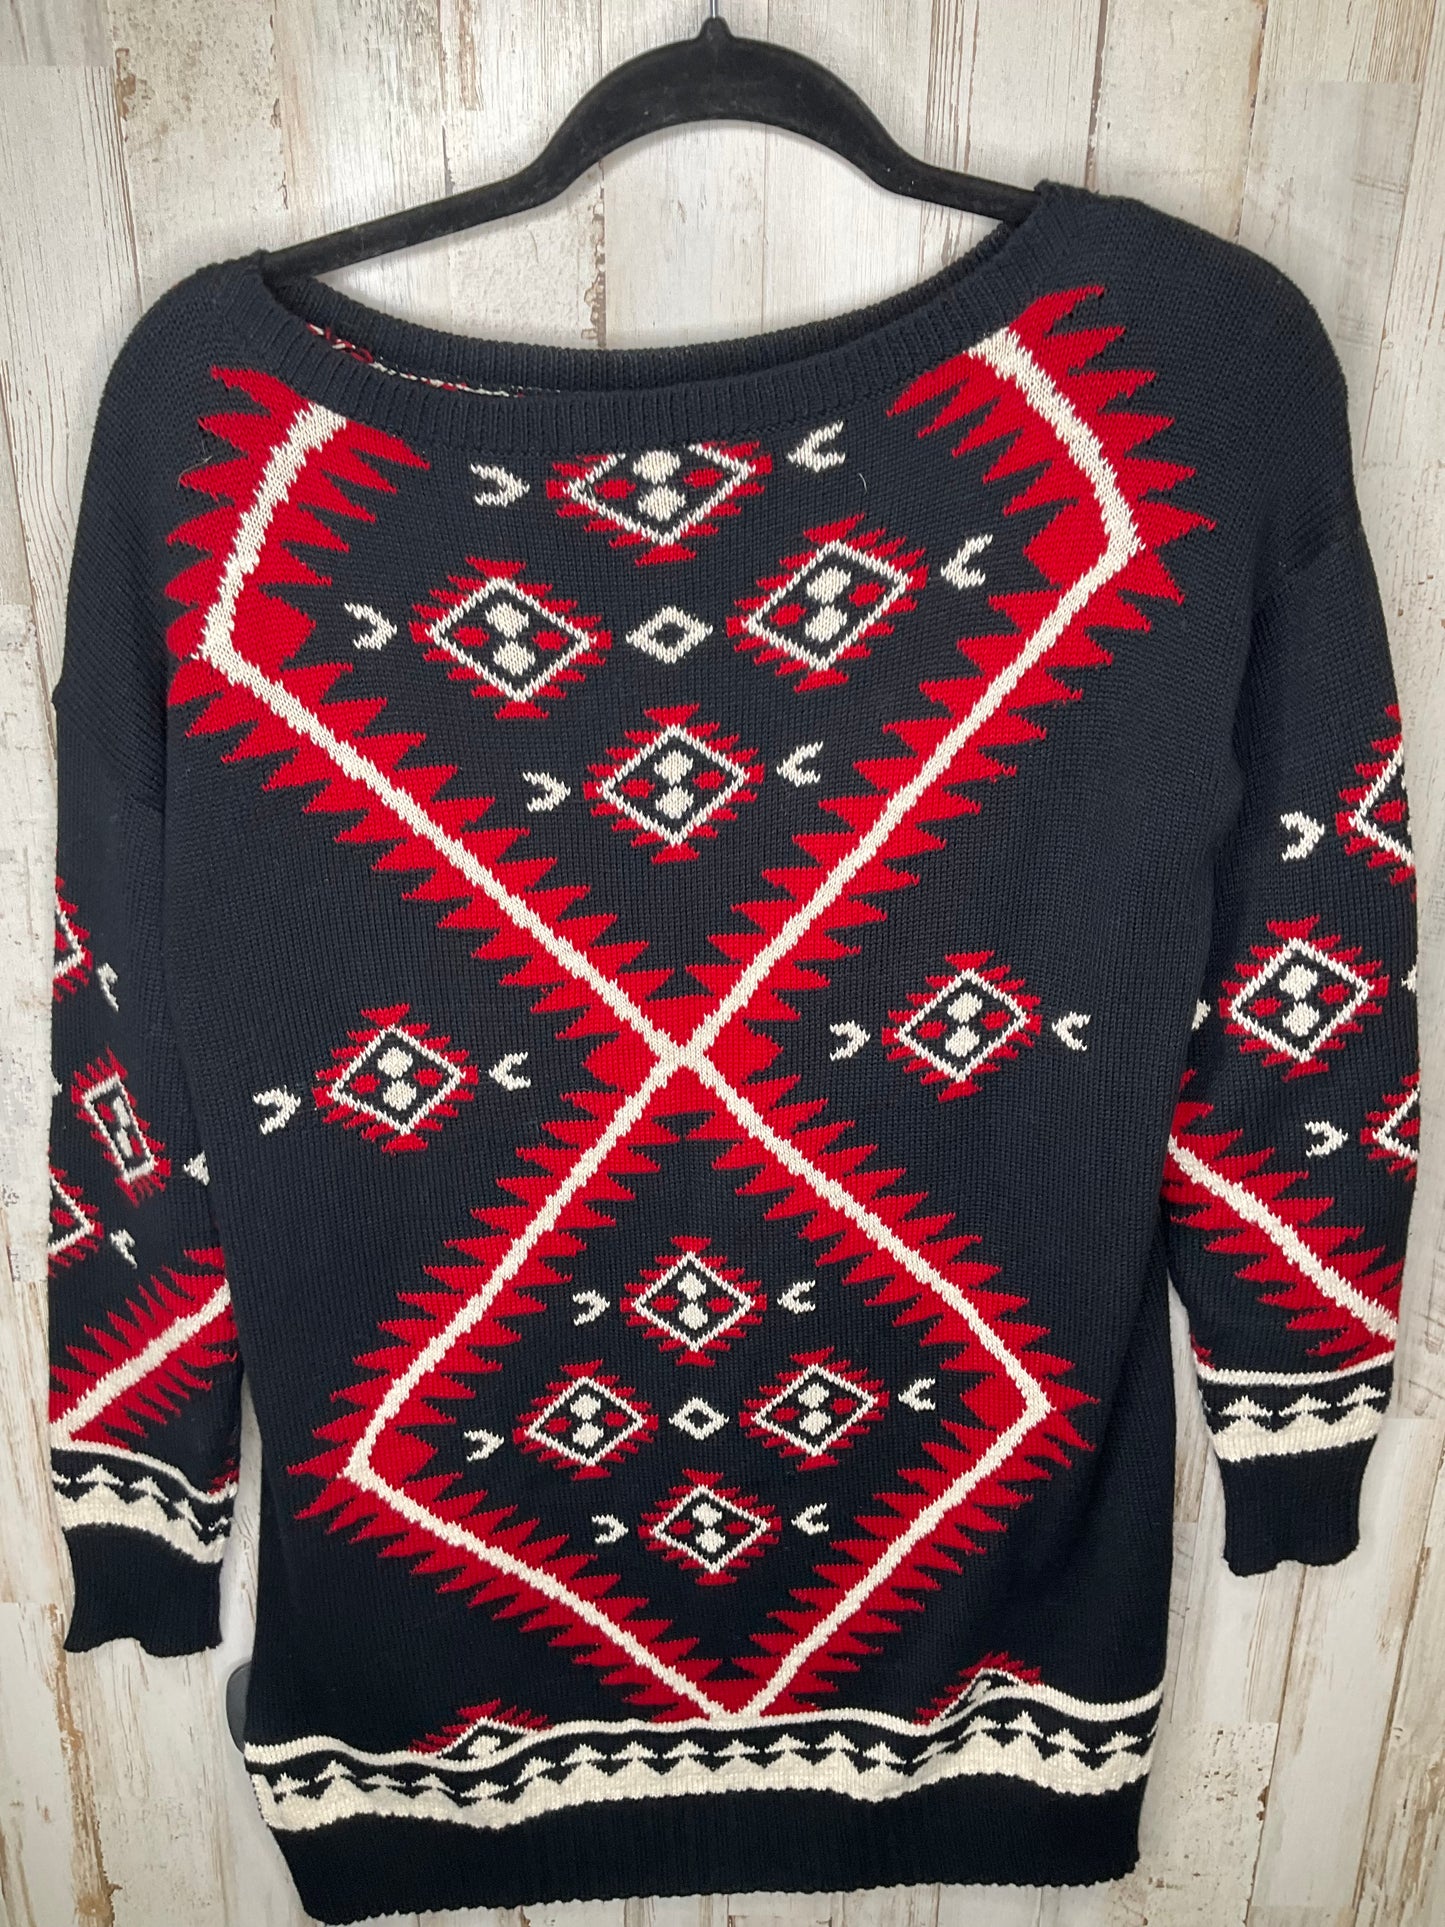 Sweater By Lauren By Ralph Lauren  Size: S